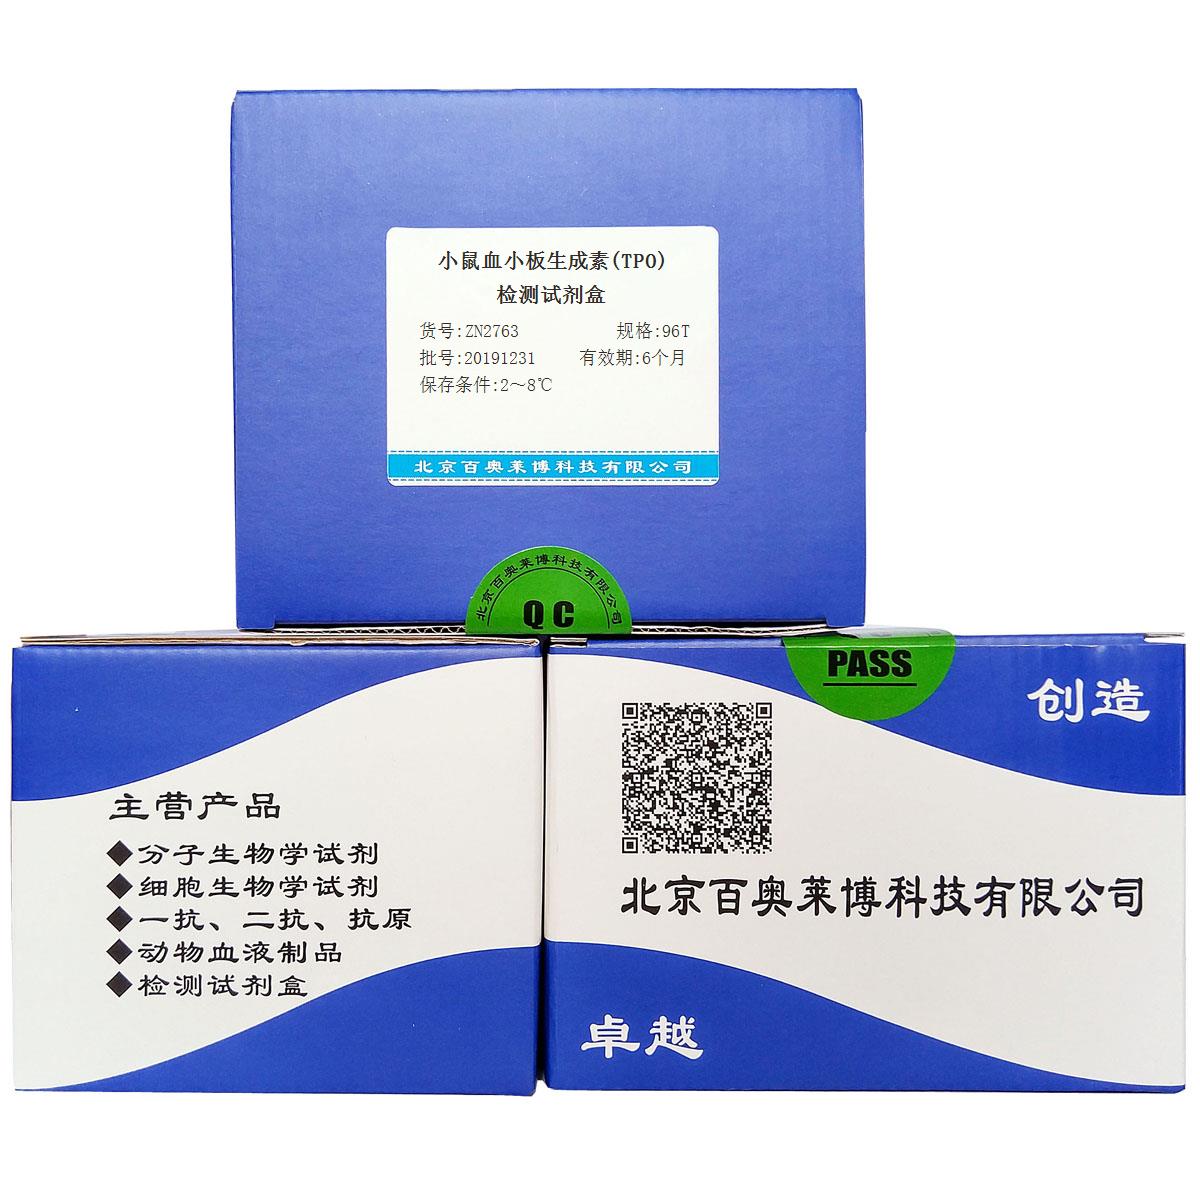 小鼠血小板生成素(TPO)检测试剂盒优惠促销